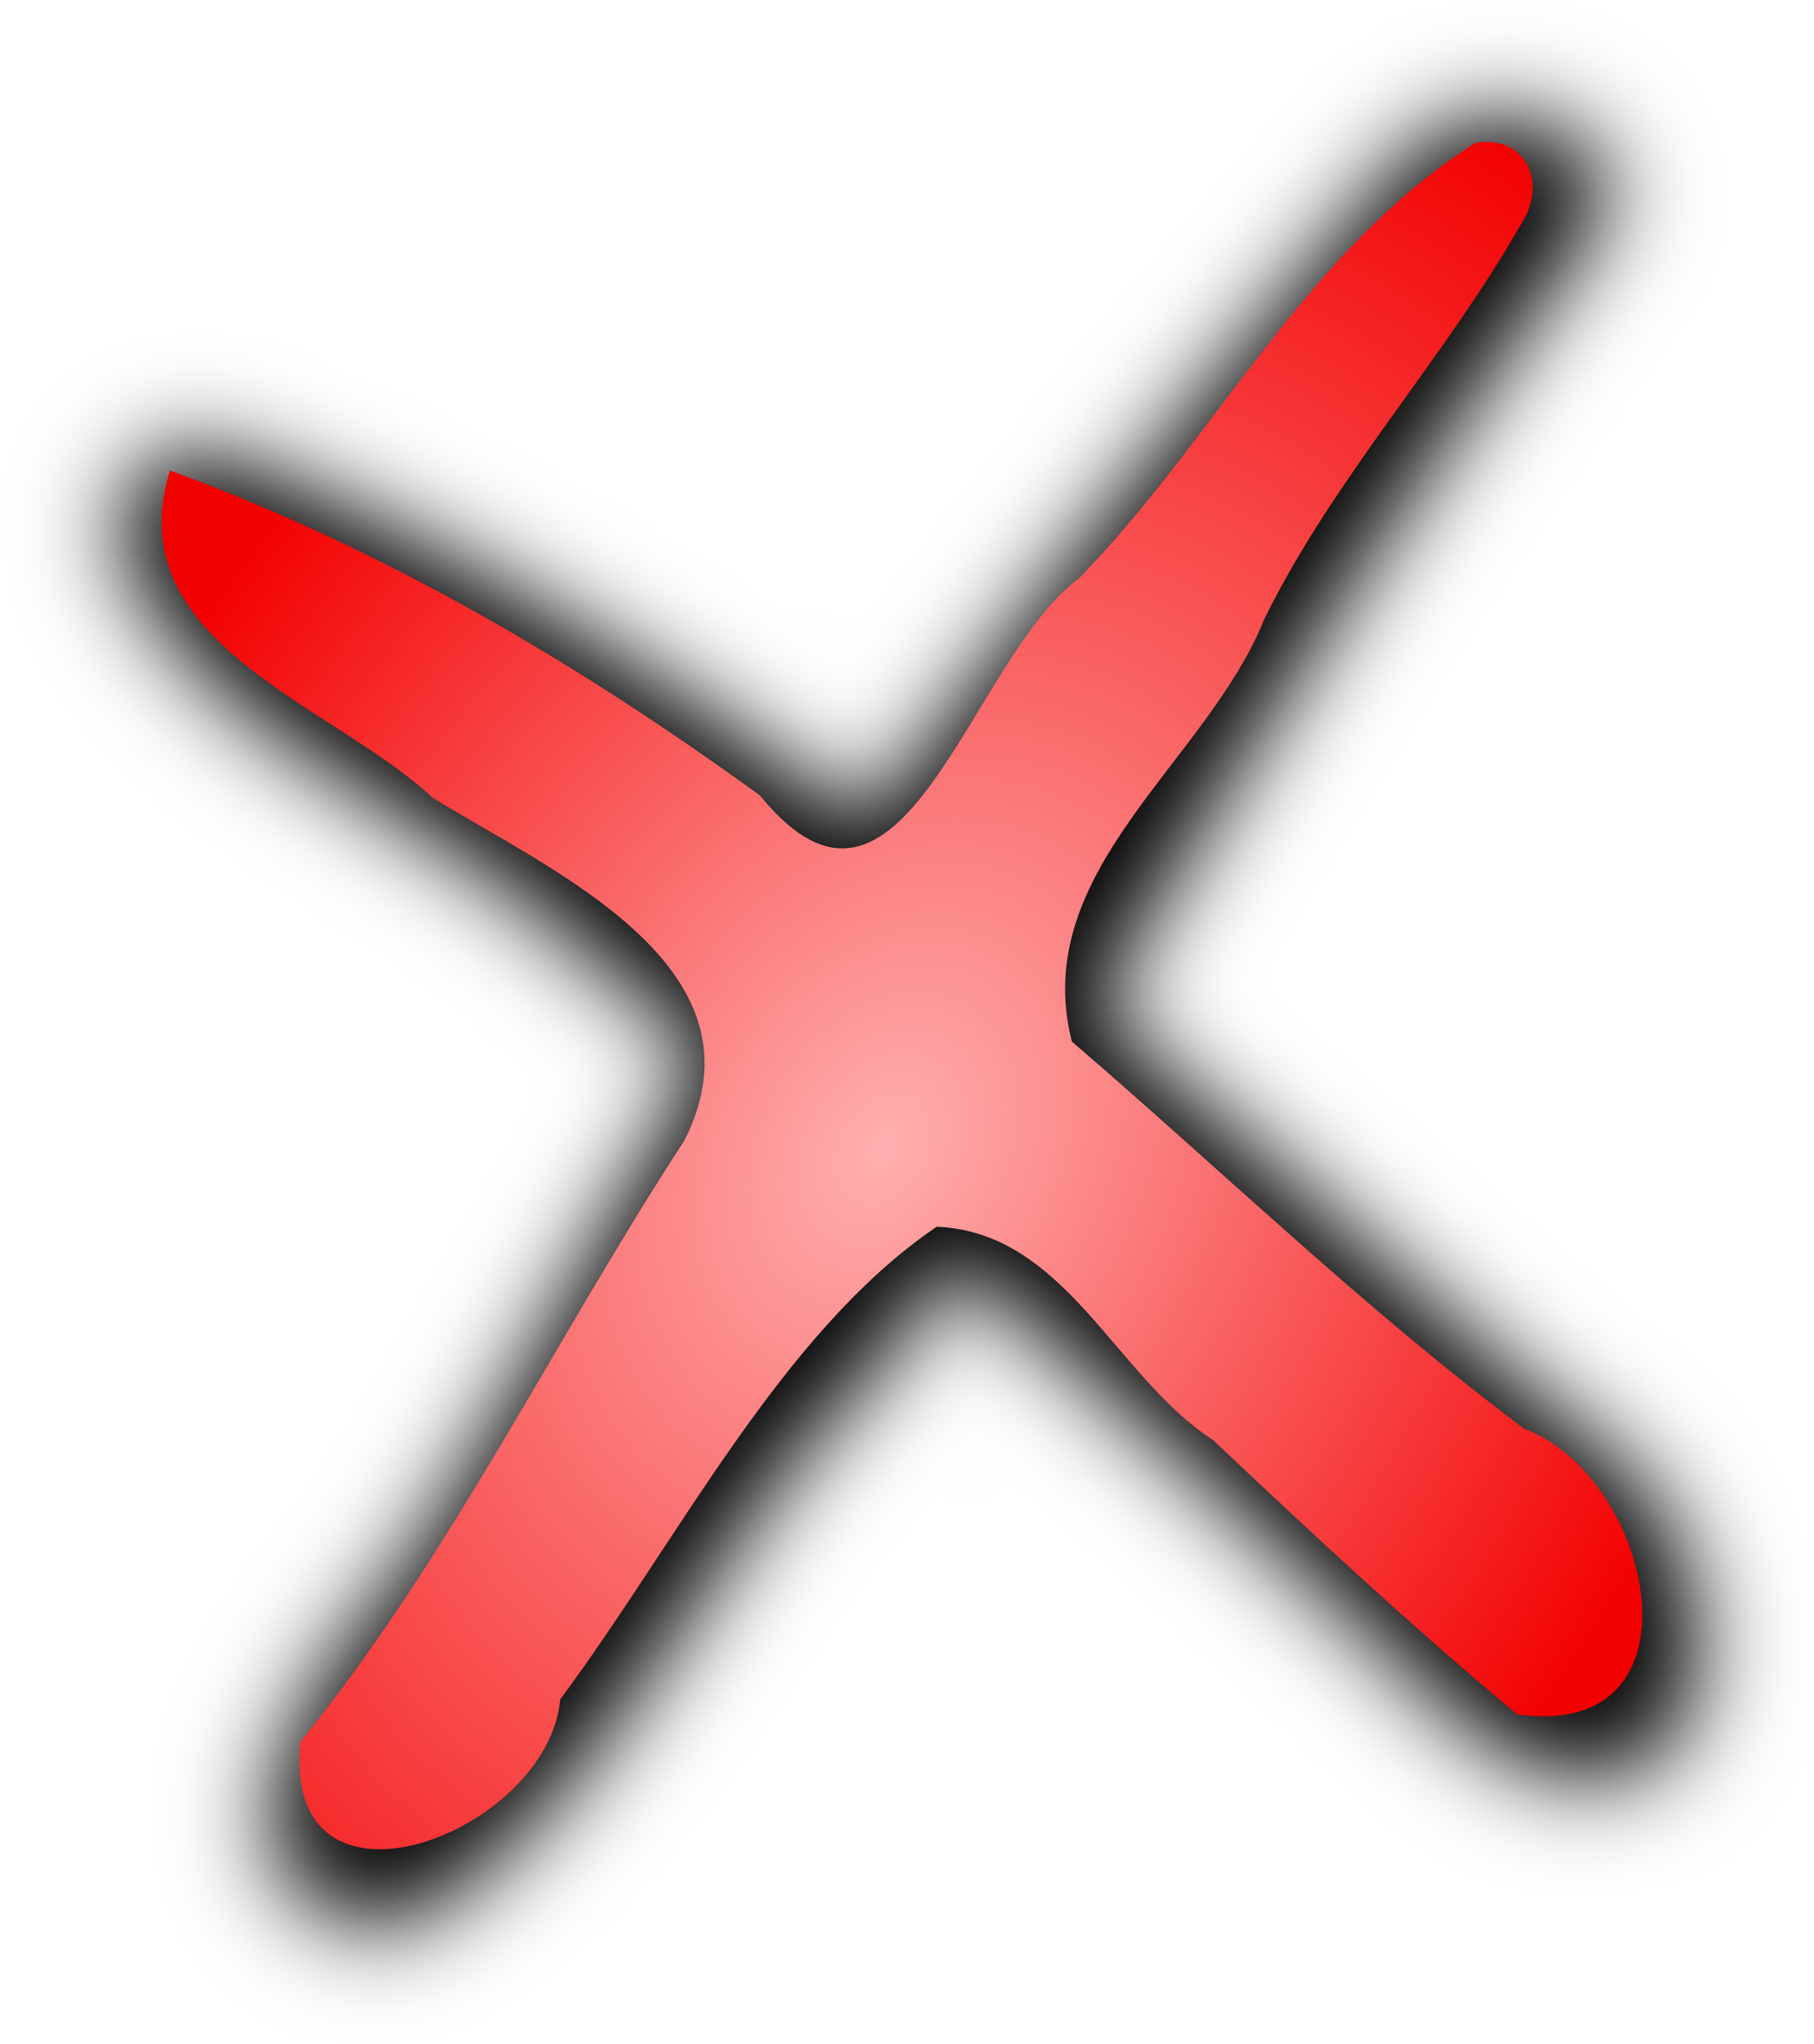 Red Cross Logo Interpretation